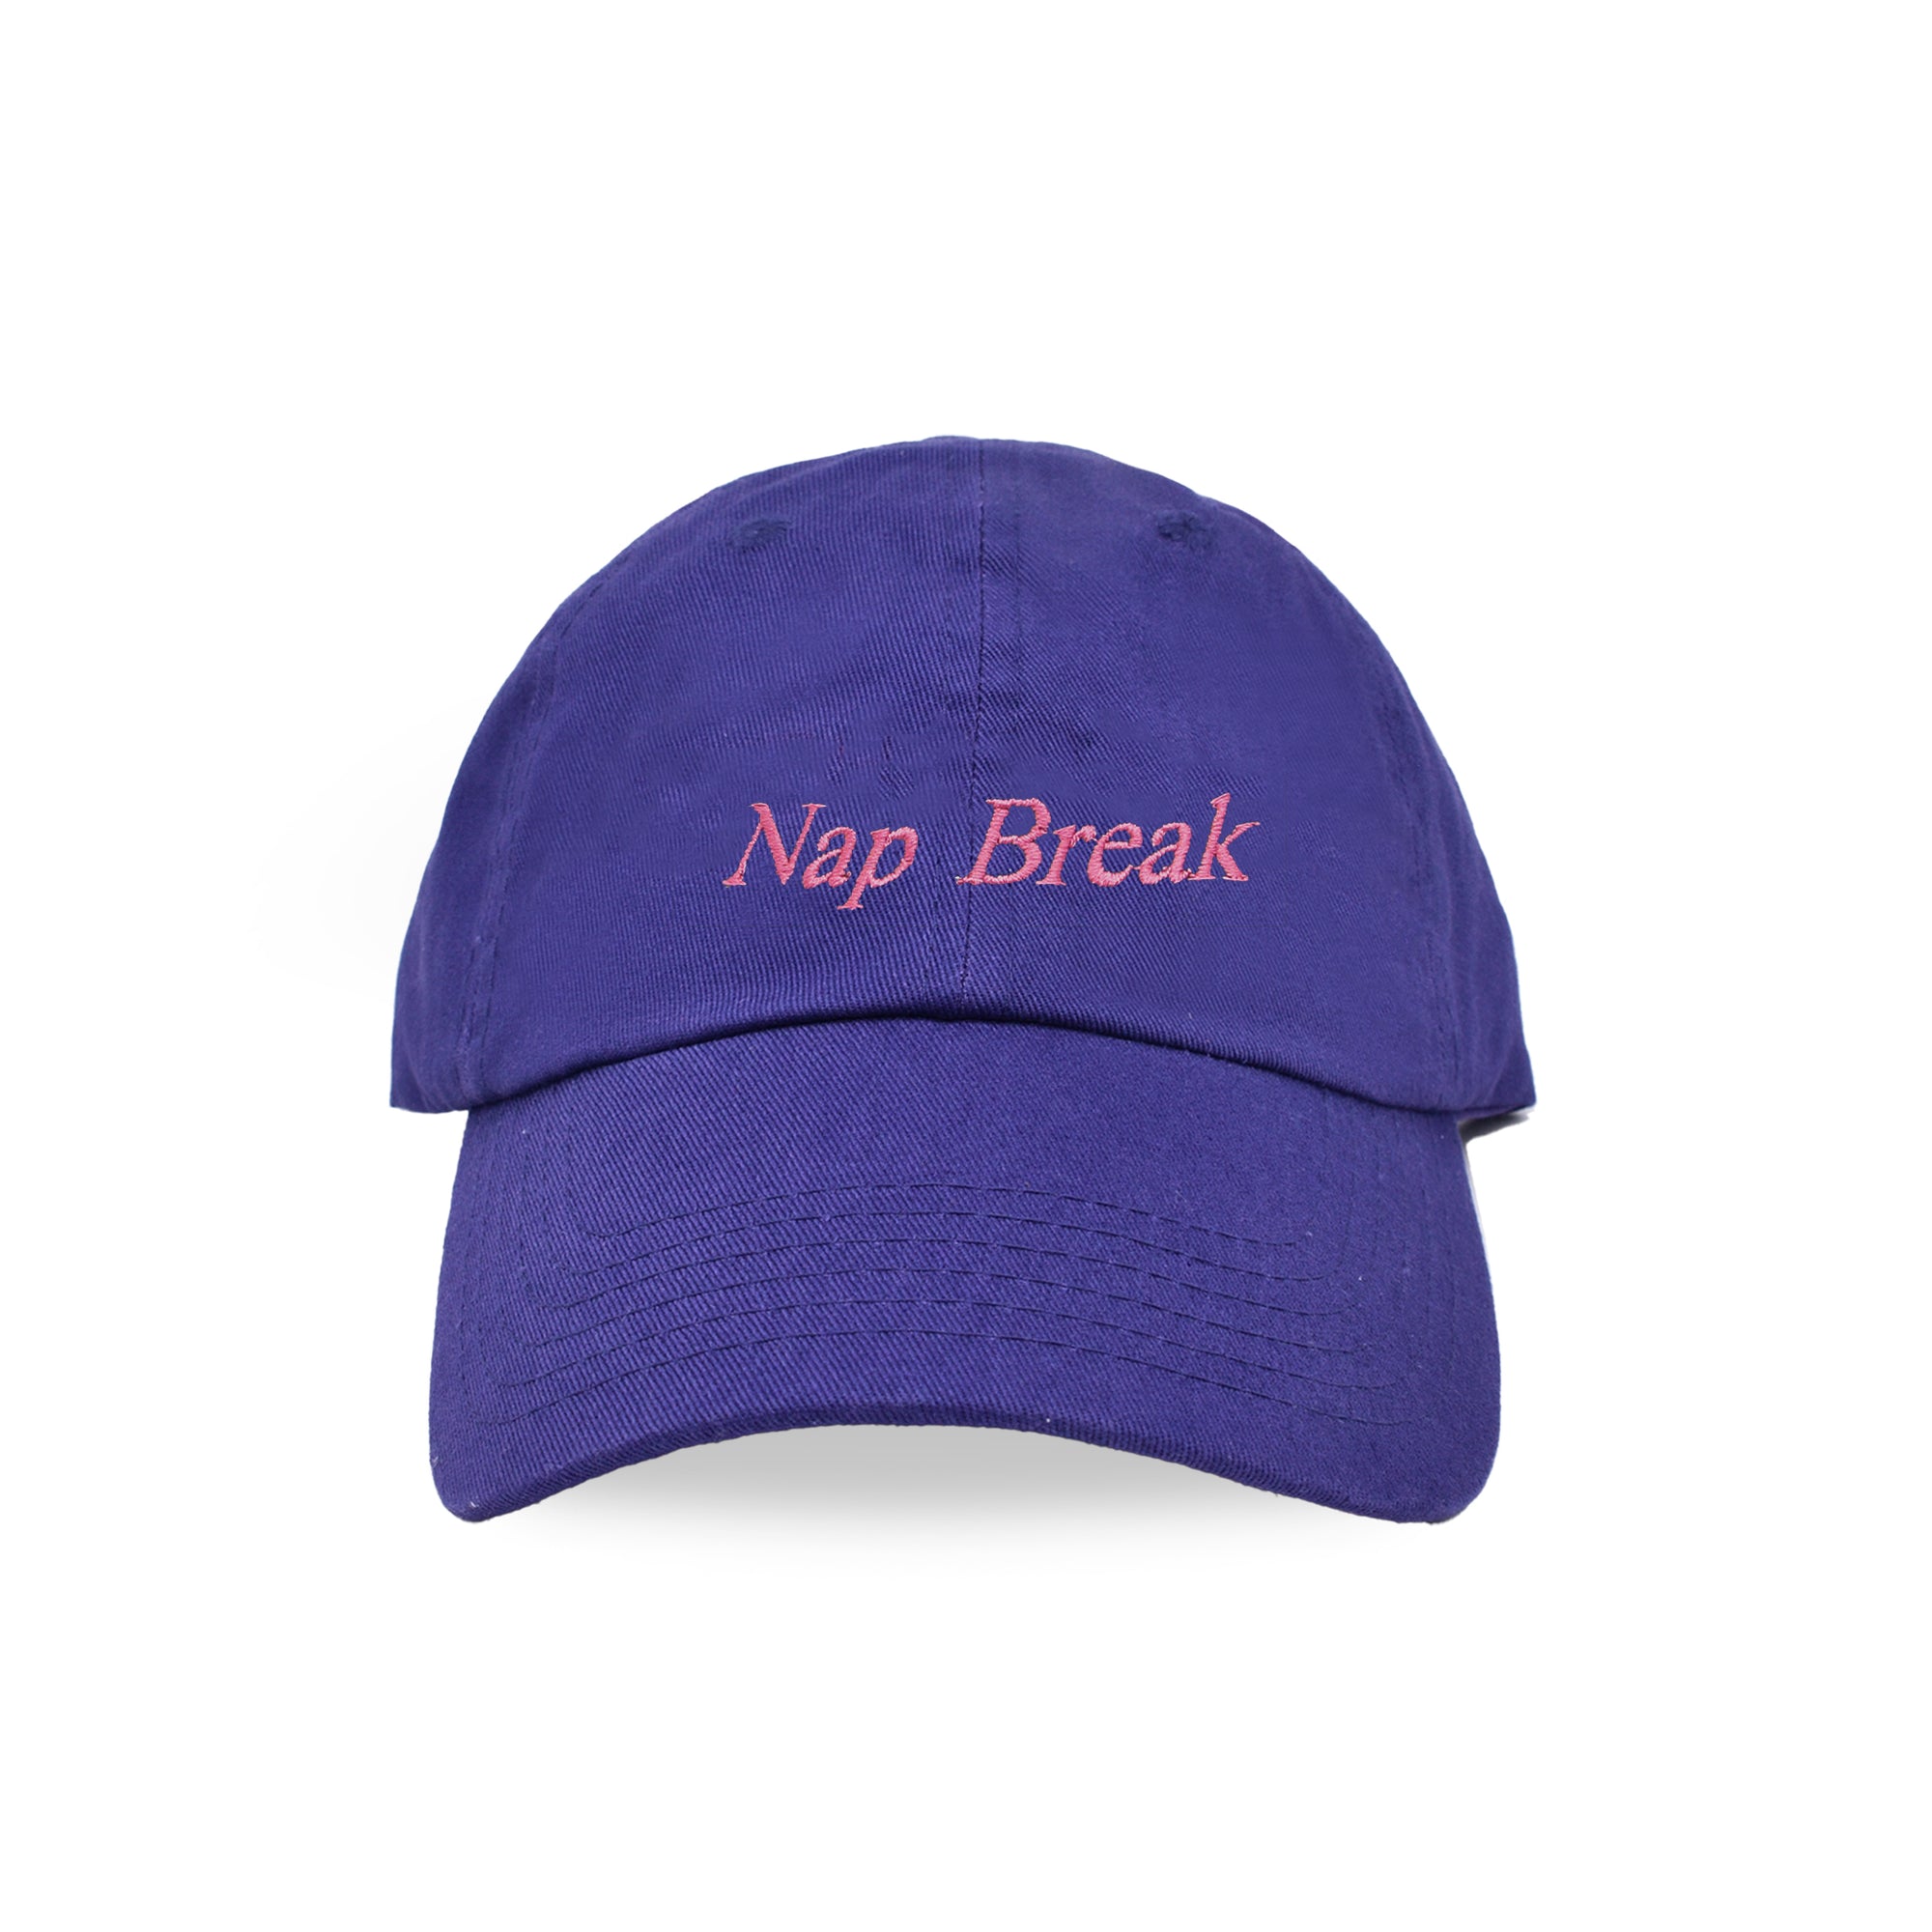 Nap Break